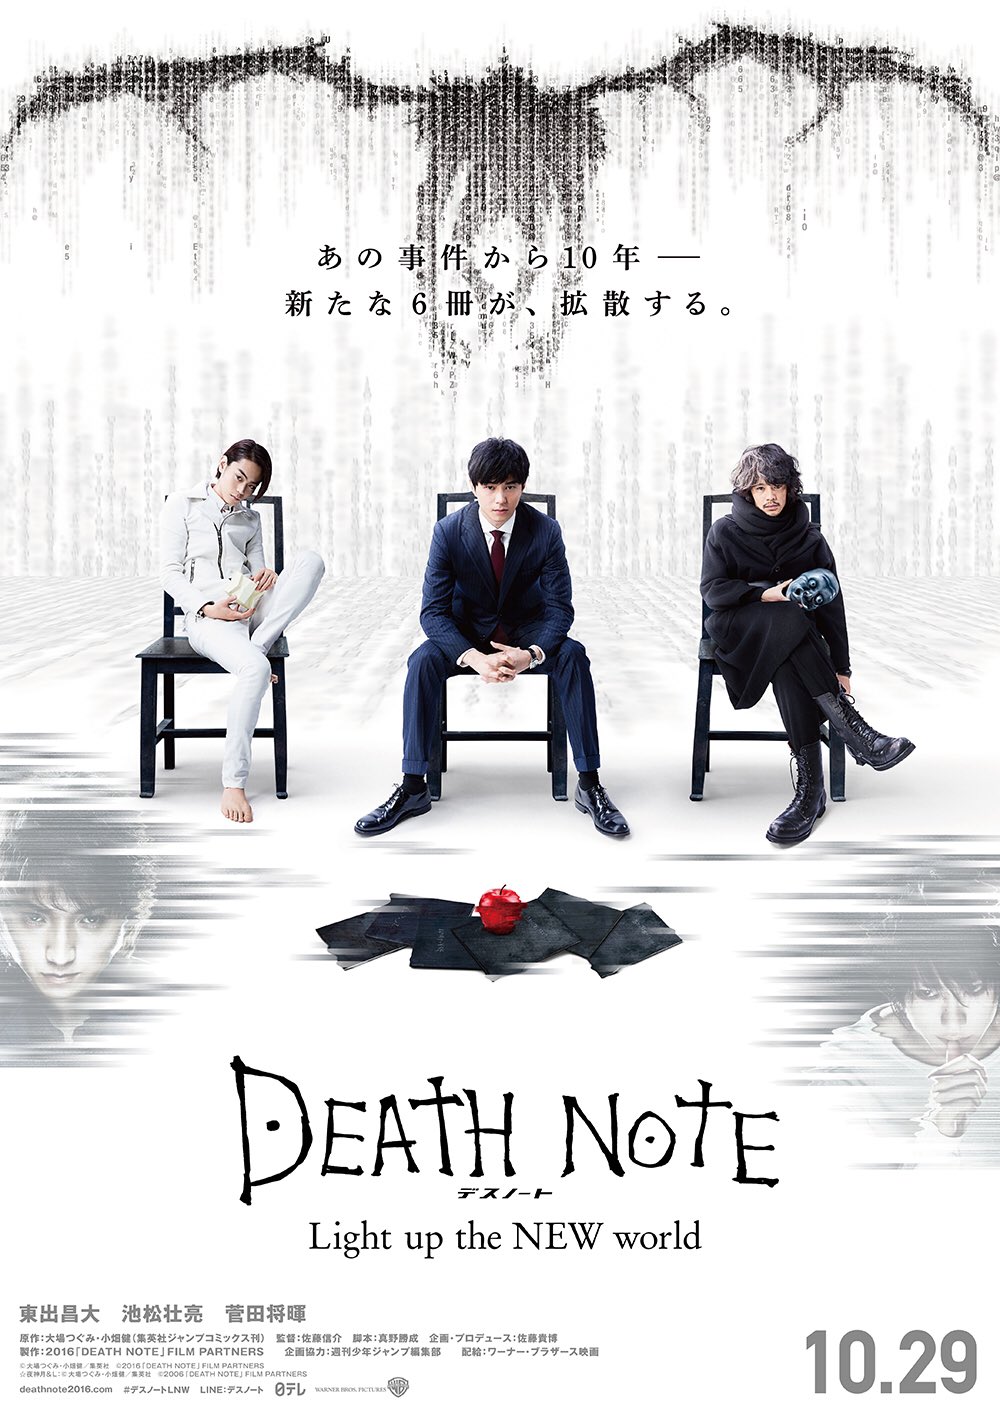 Death Note (TV Series 2006-2007) - Imagens de fundo — The Movie